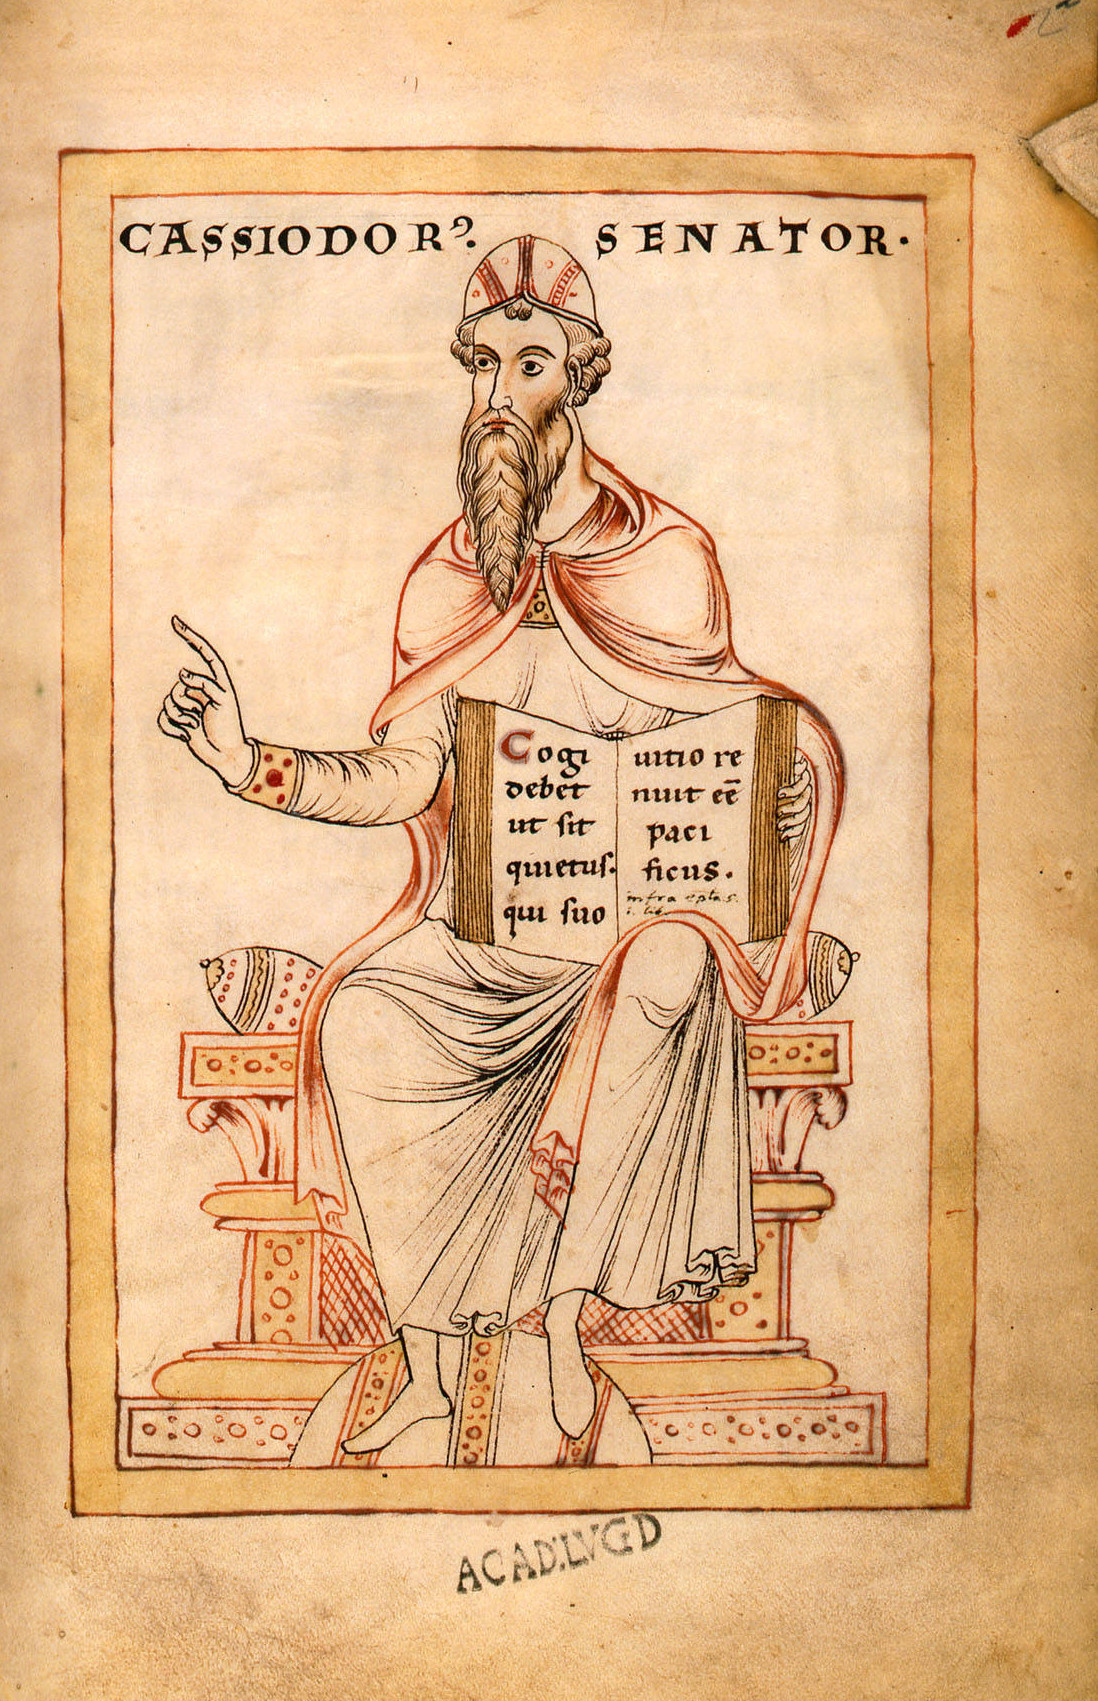 Gesta Theodorici Flavius Magnus Aurelius Cassiodorus c 485 c 580